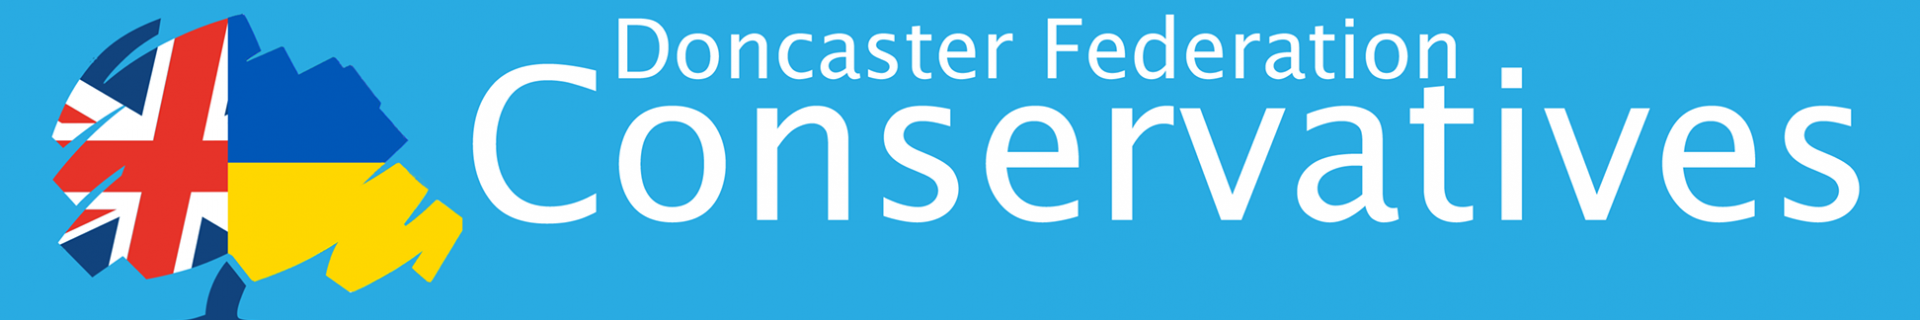 Banner image for Doncaster